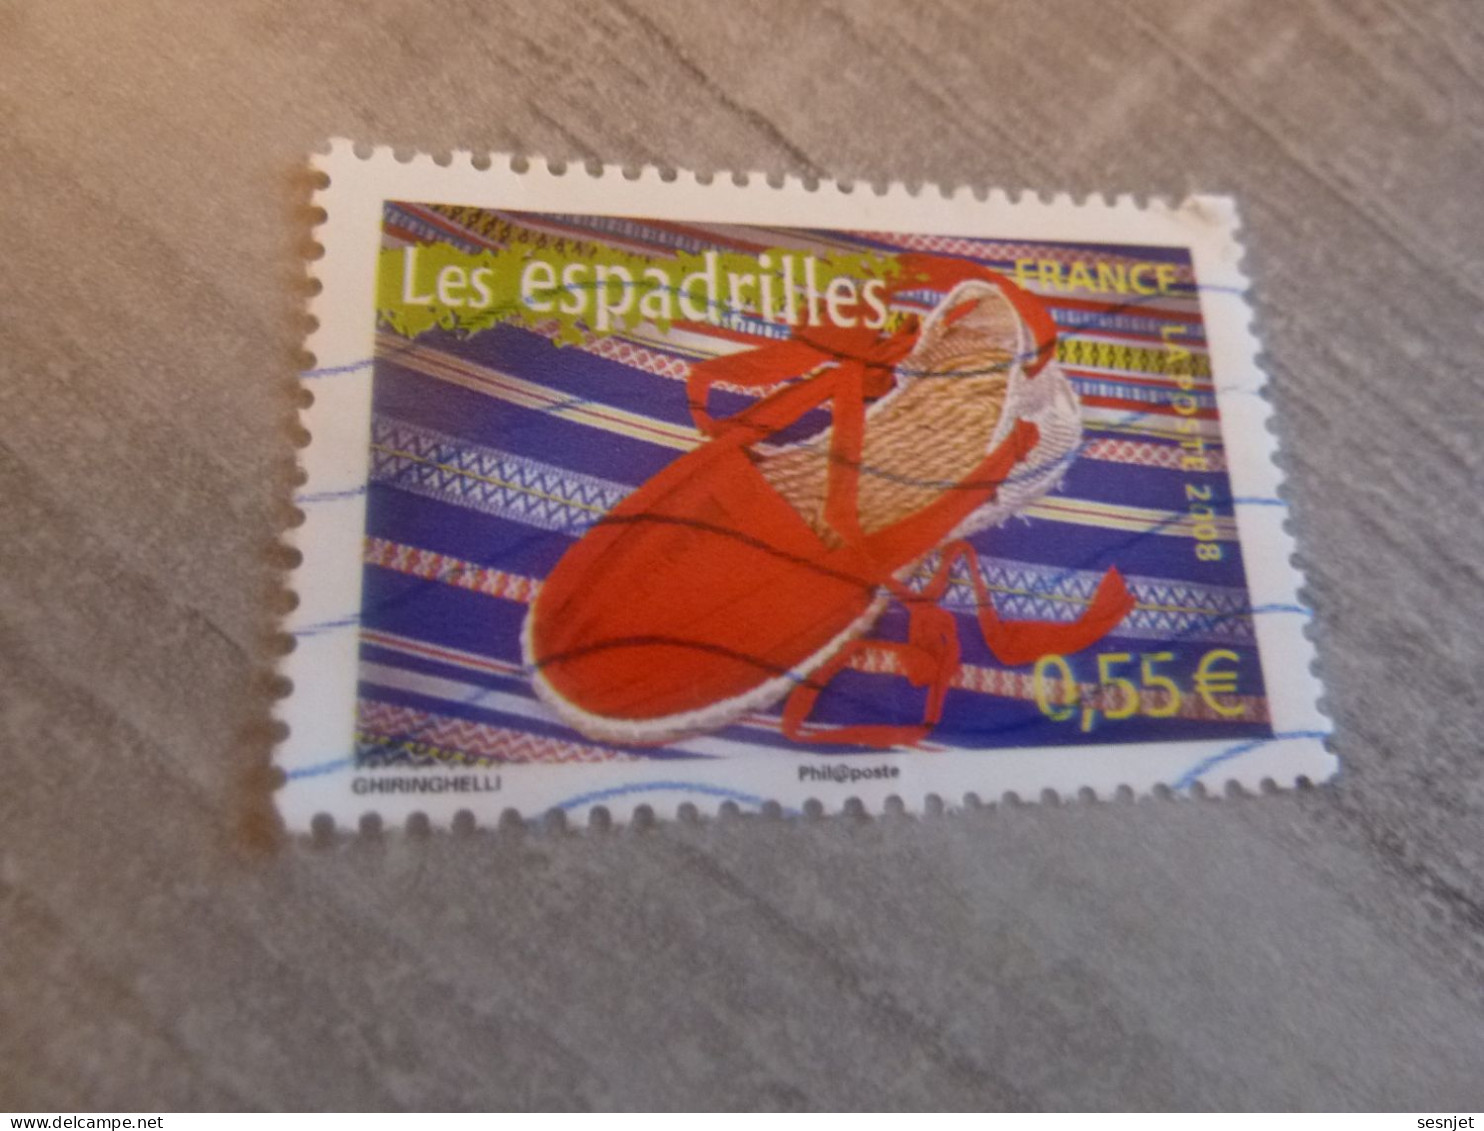 Les Espadrilles - Portraits De Régions - La France à Vivre - 0.55 € - Yt 4260 - Multicolore - Oblitéré - Année 2008 - - Used Stamps